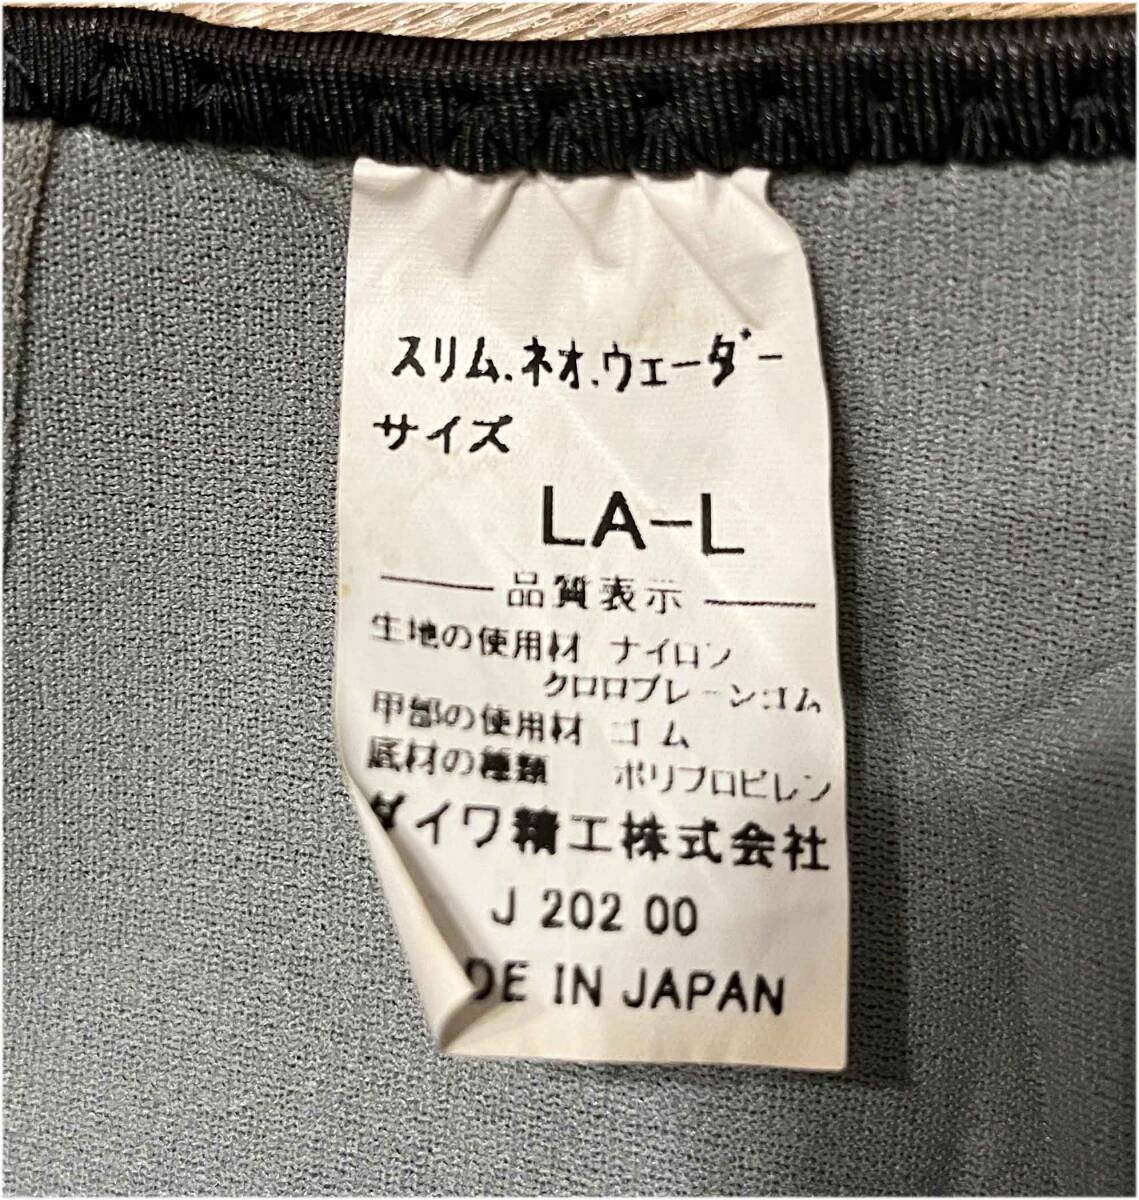  Daiwa тонкий Neo забродный полукомбинезон [ сделано в Японии ]25.5~26.0 LA-A